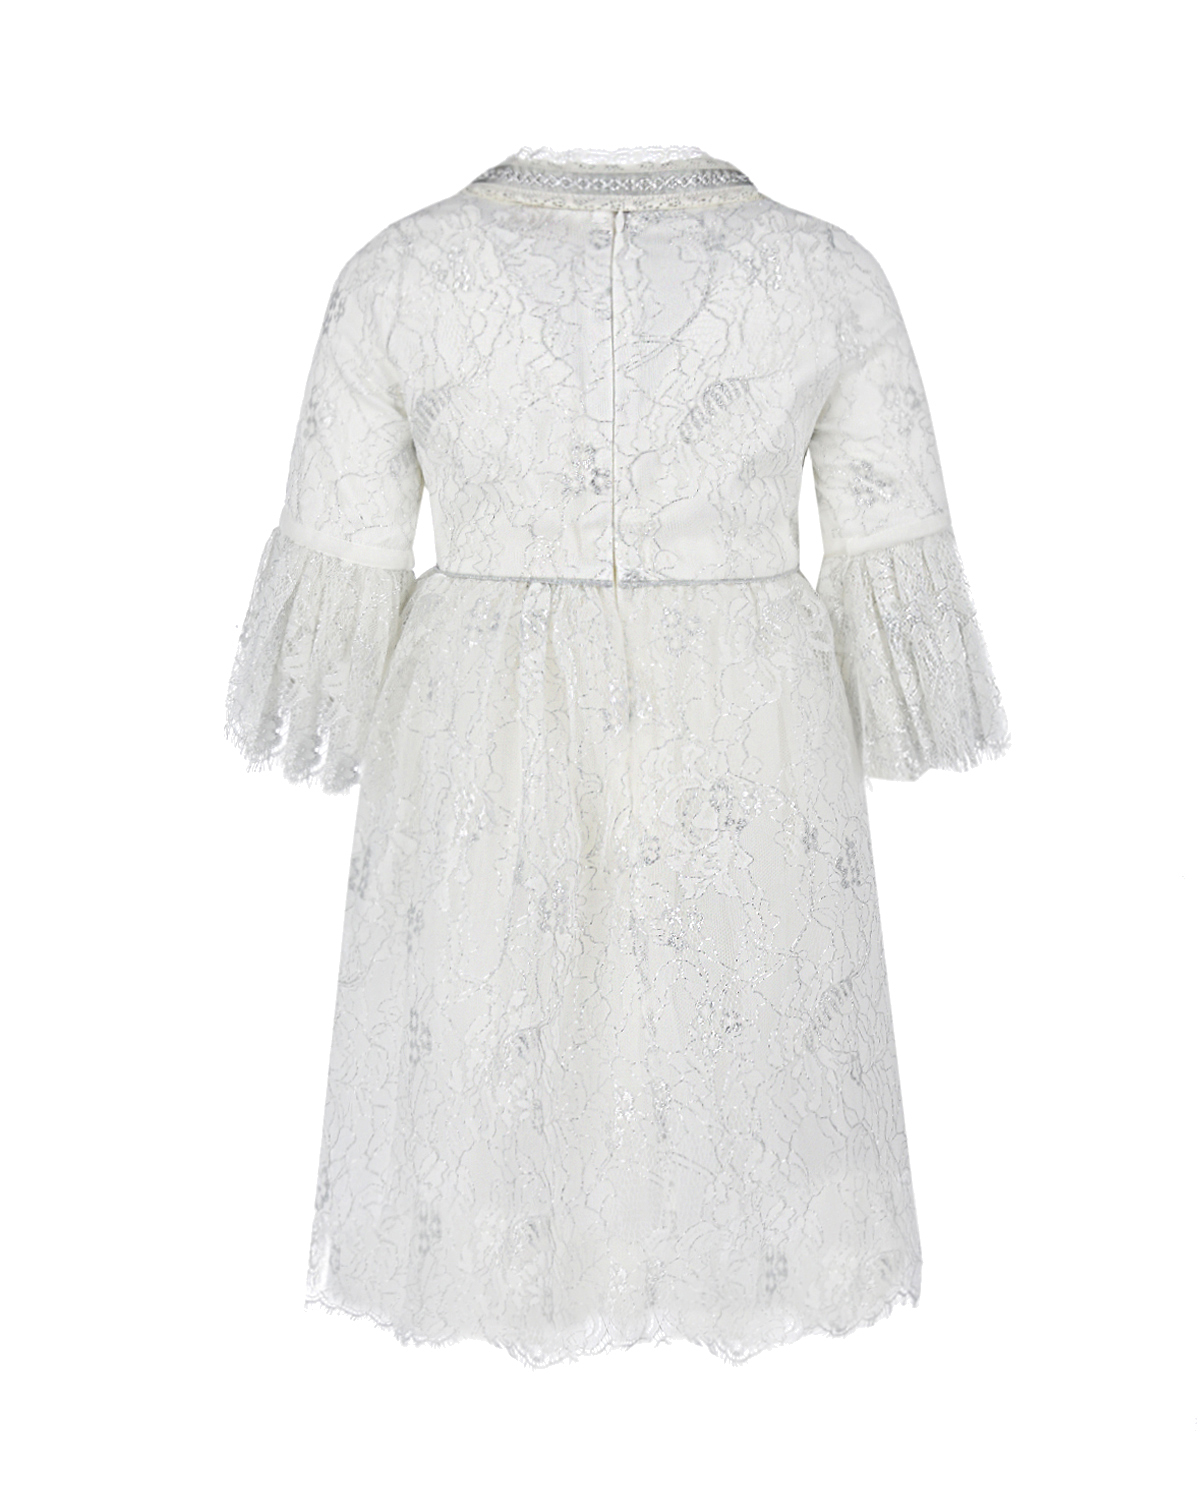 Белое платье с рукавами 3/4 Eirene детское, размер 128, цвет белый Белое платье с рукавами 3/4 Eirene детское - фото 2